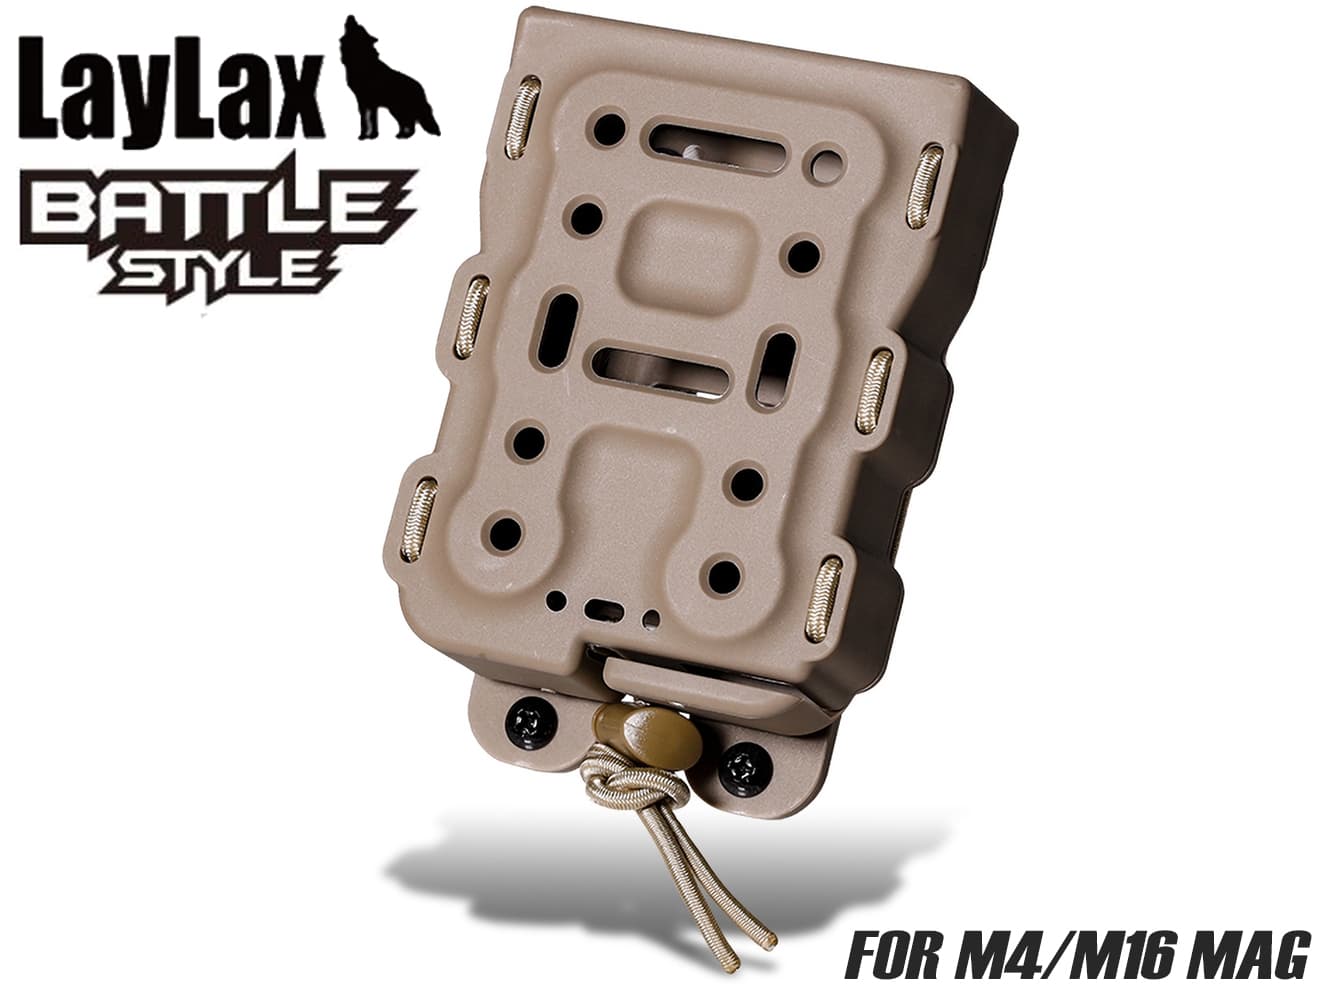 LayLax BATTLE STYLE BITE-MG（バイトマグ）M4/M16クイックマグ